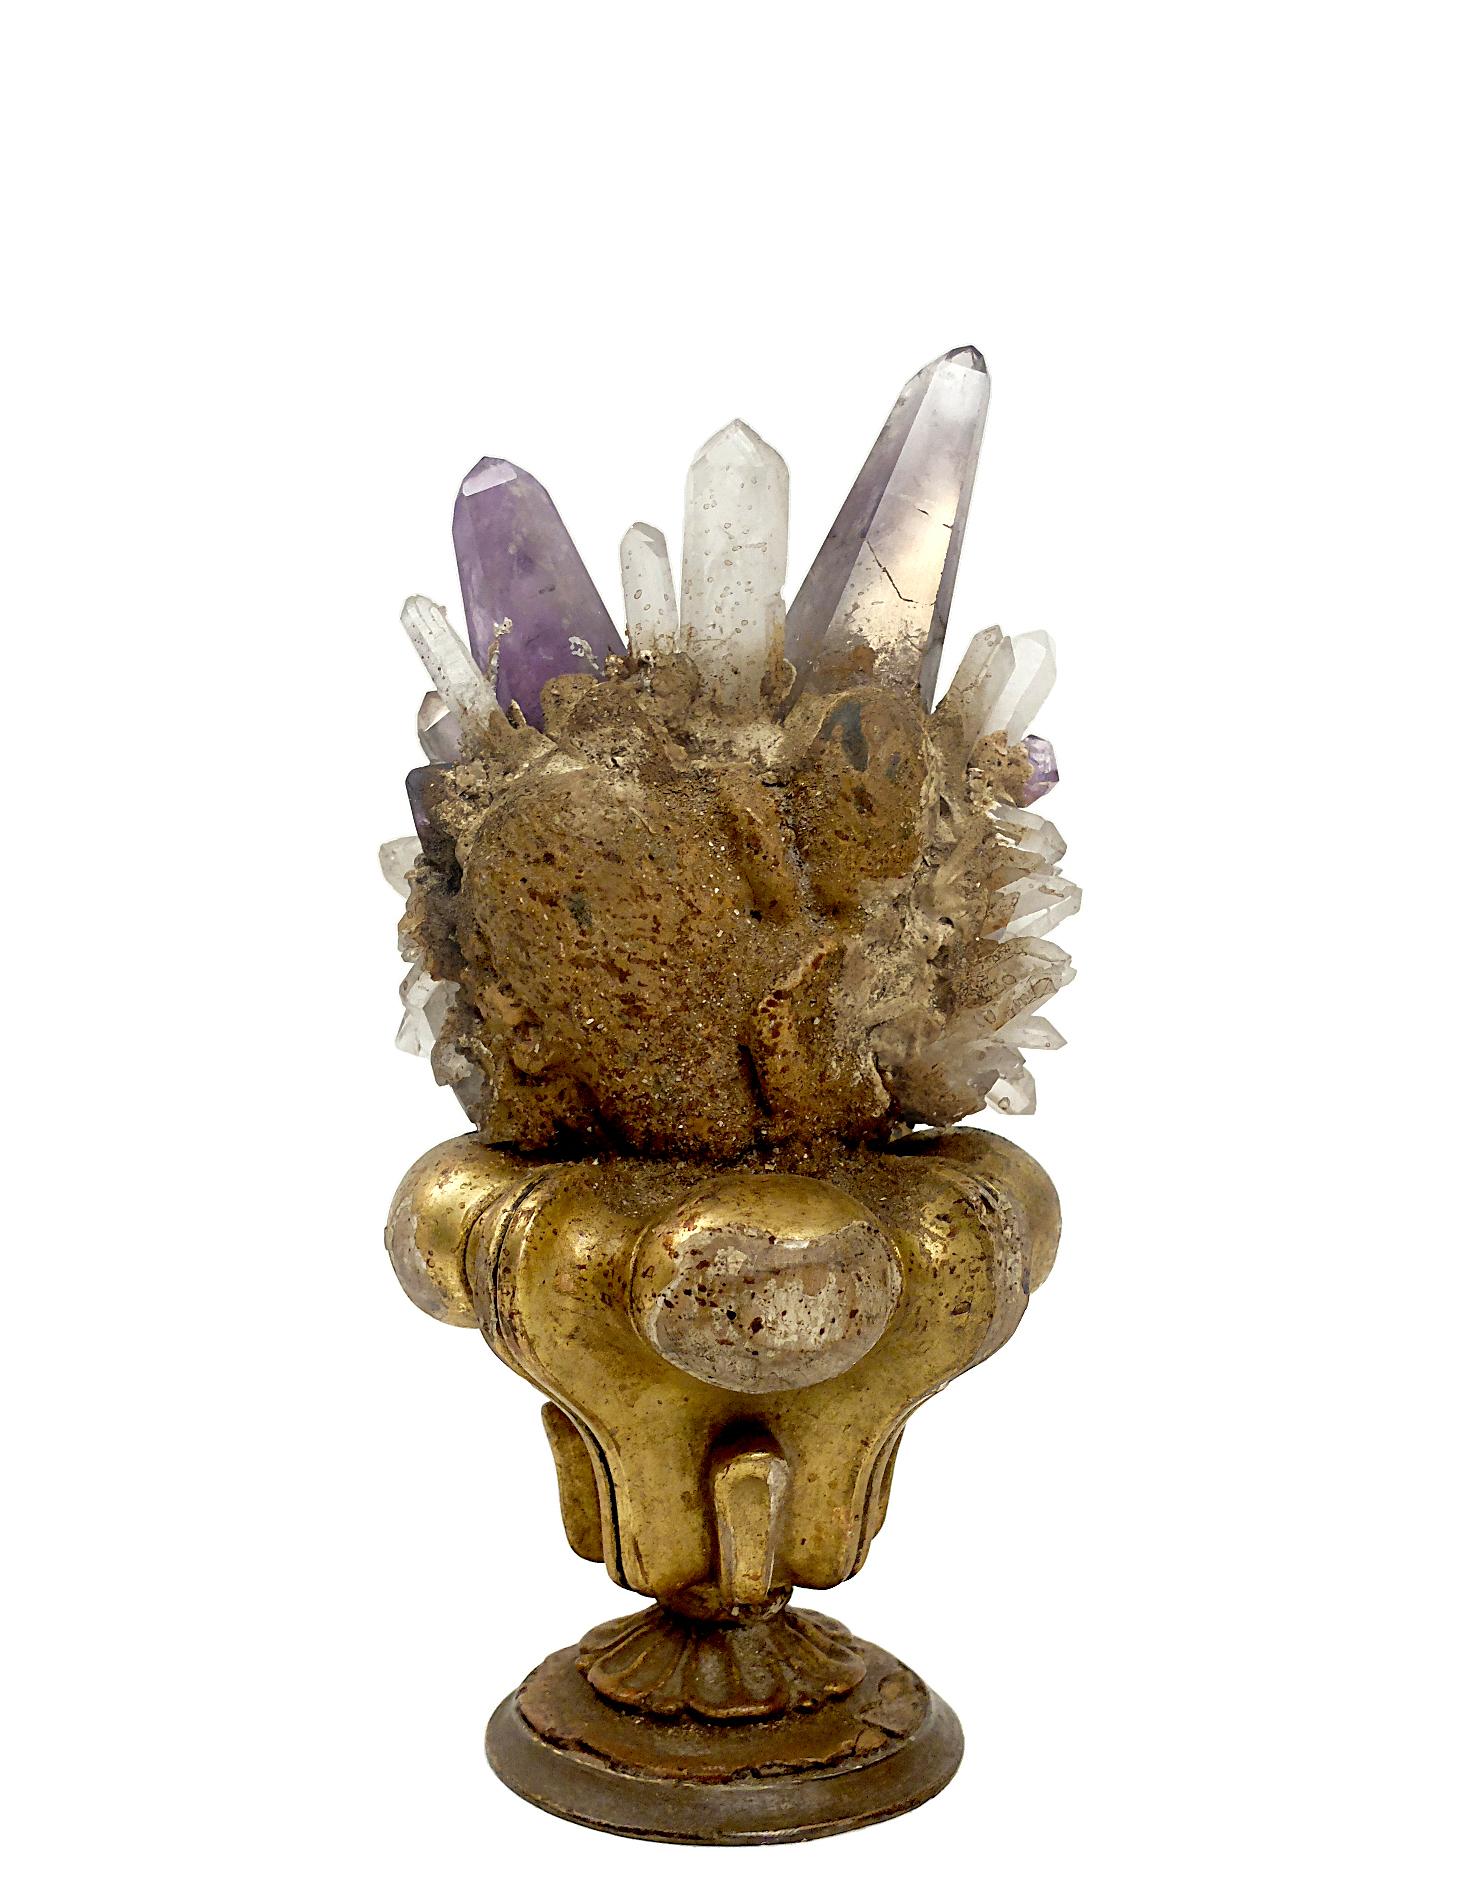 Italian Crystal Wunderkamer Naturalia Specimen, Rock Crystal and Amethyst, Italy, 1880